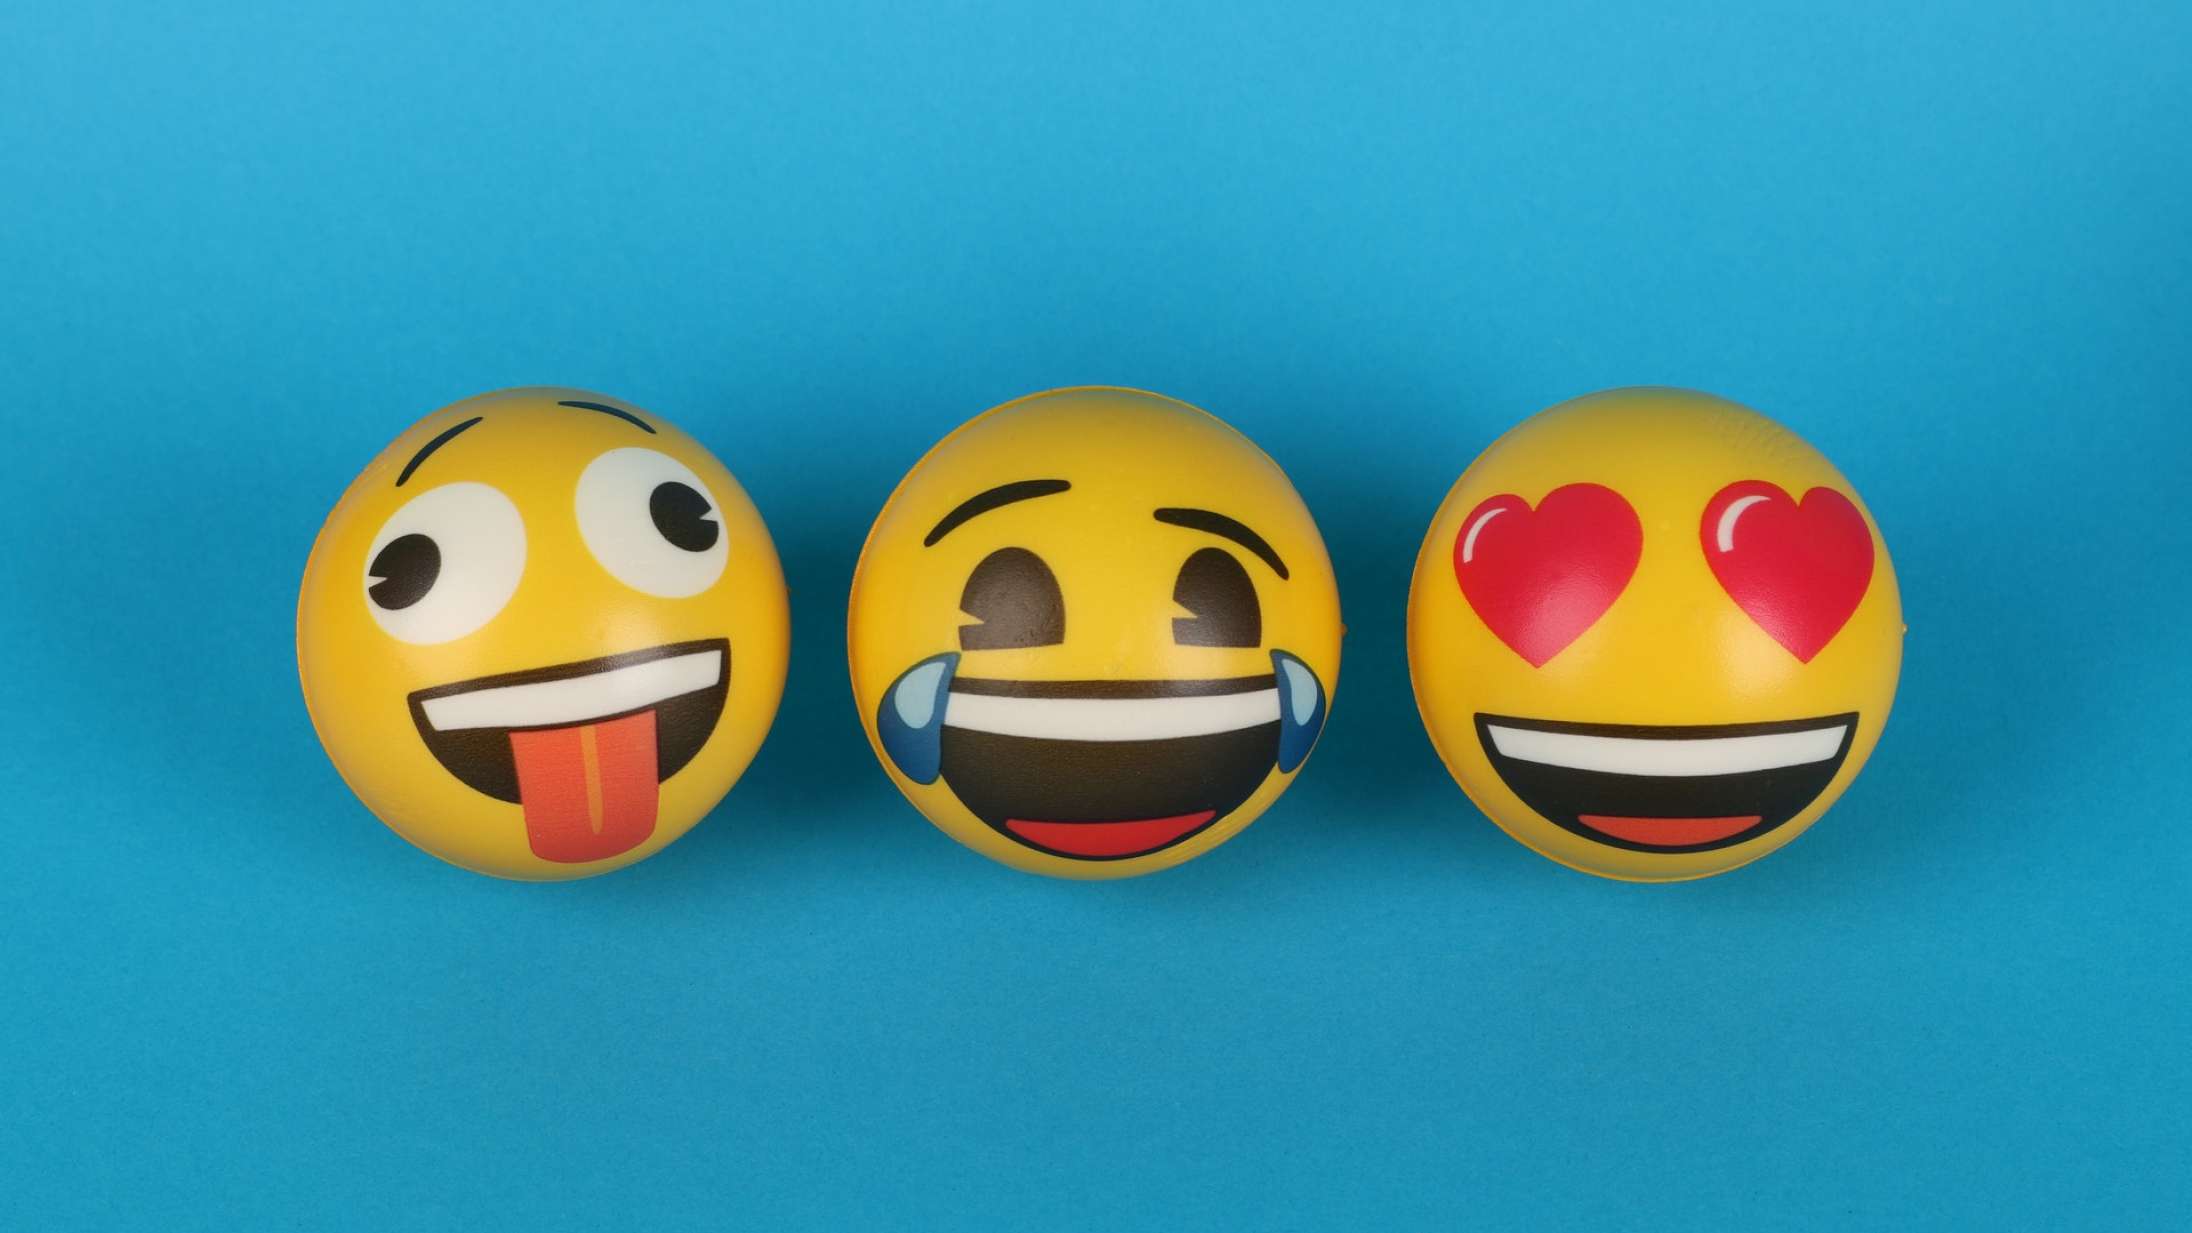 En 30-årig tiktoker fortæller, hvordan emojis bruges af unge – og ja, det er faktisk sjovt